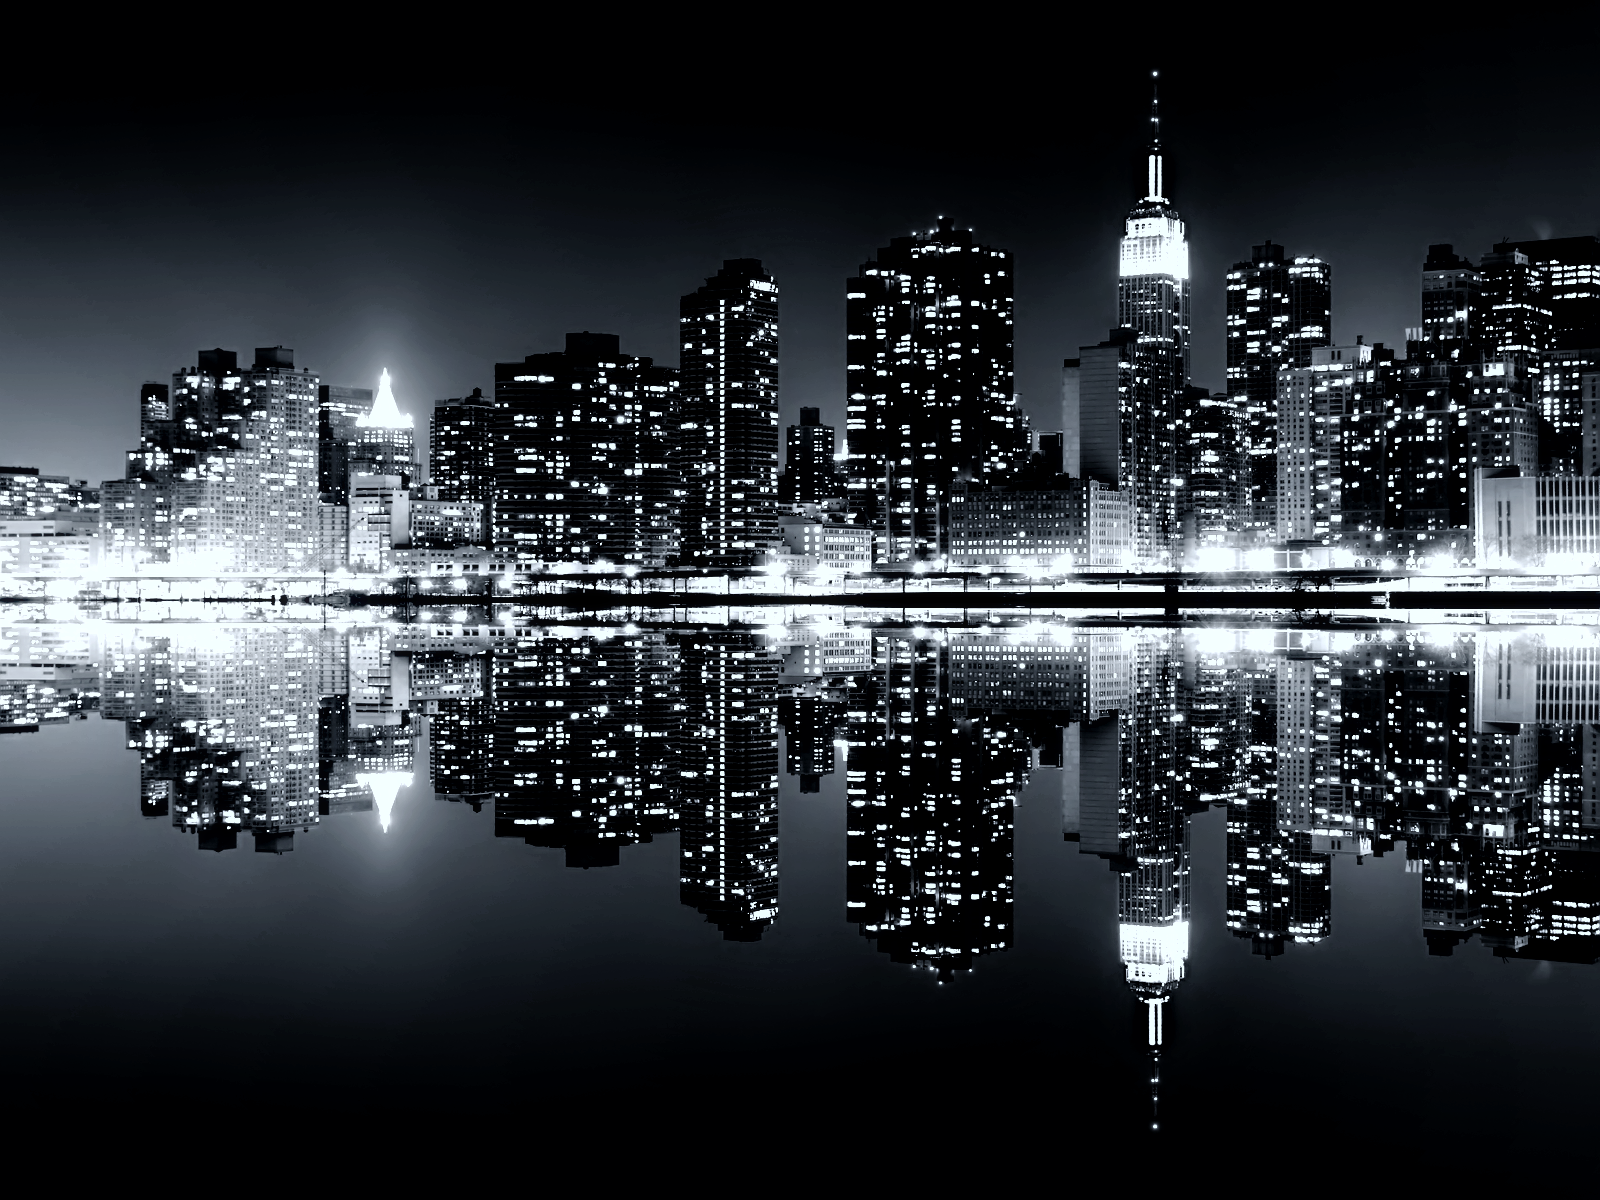 http://3.bp.blogspot.com/_UeKpPmoedmk/THEaL1BIcGI/AAAAAAAAAeY/kFeMjLN8IOQ/s1600/Manhattan+Reflections+Skyline+Wallp+TLG.png